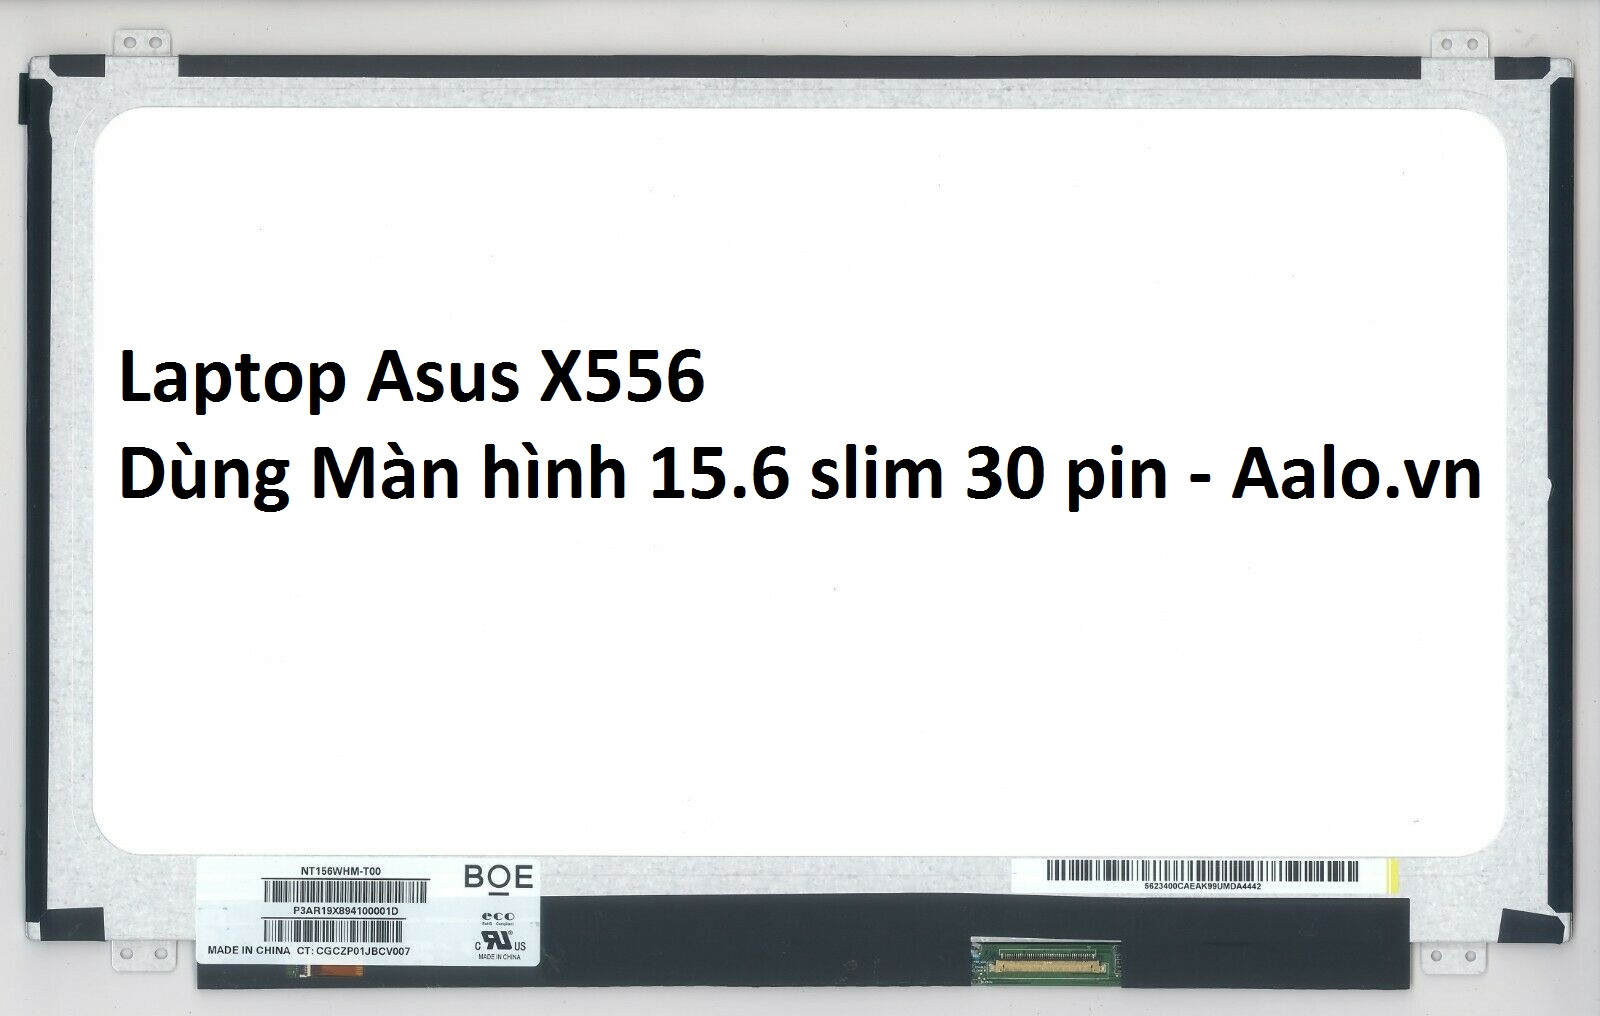 Màn hình Laptop Asus X556 - Aalo.vn